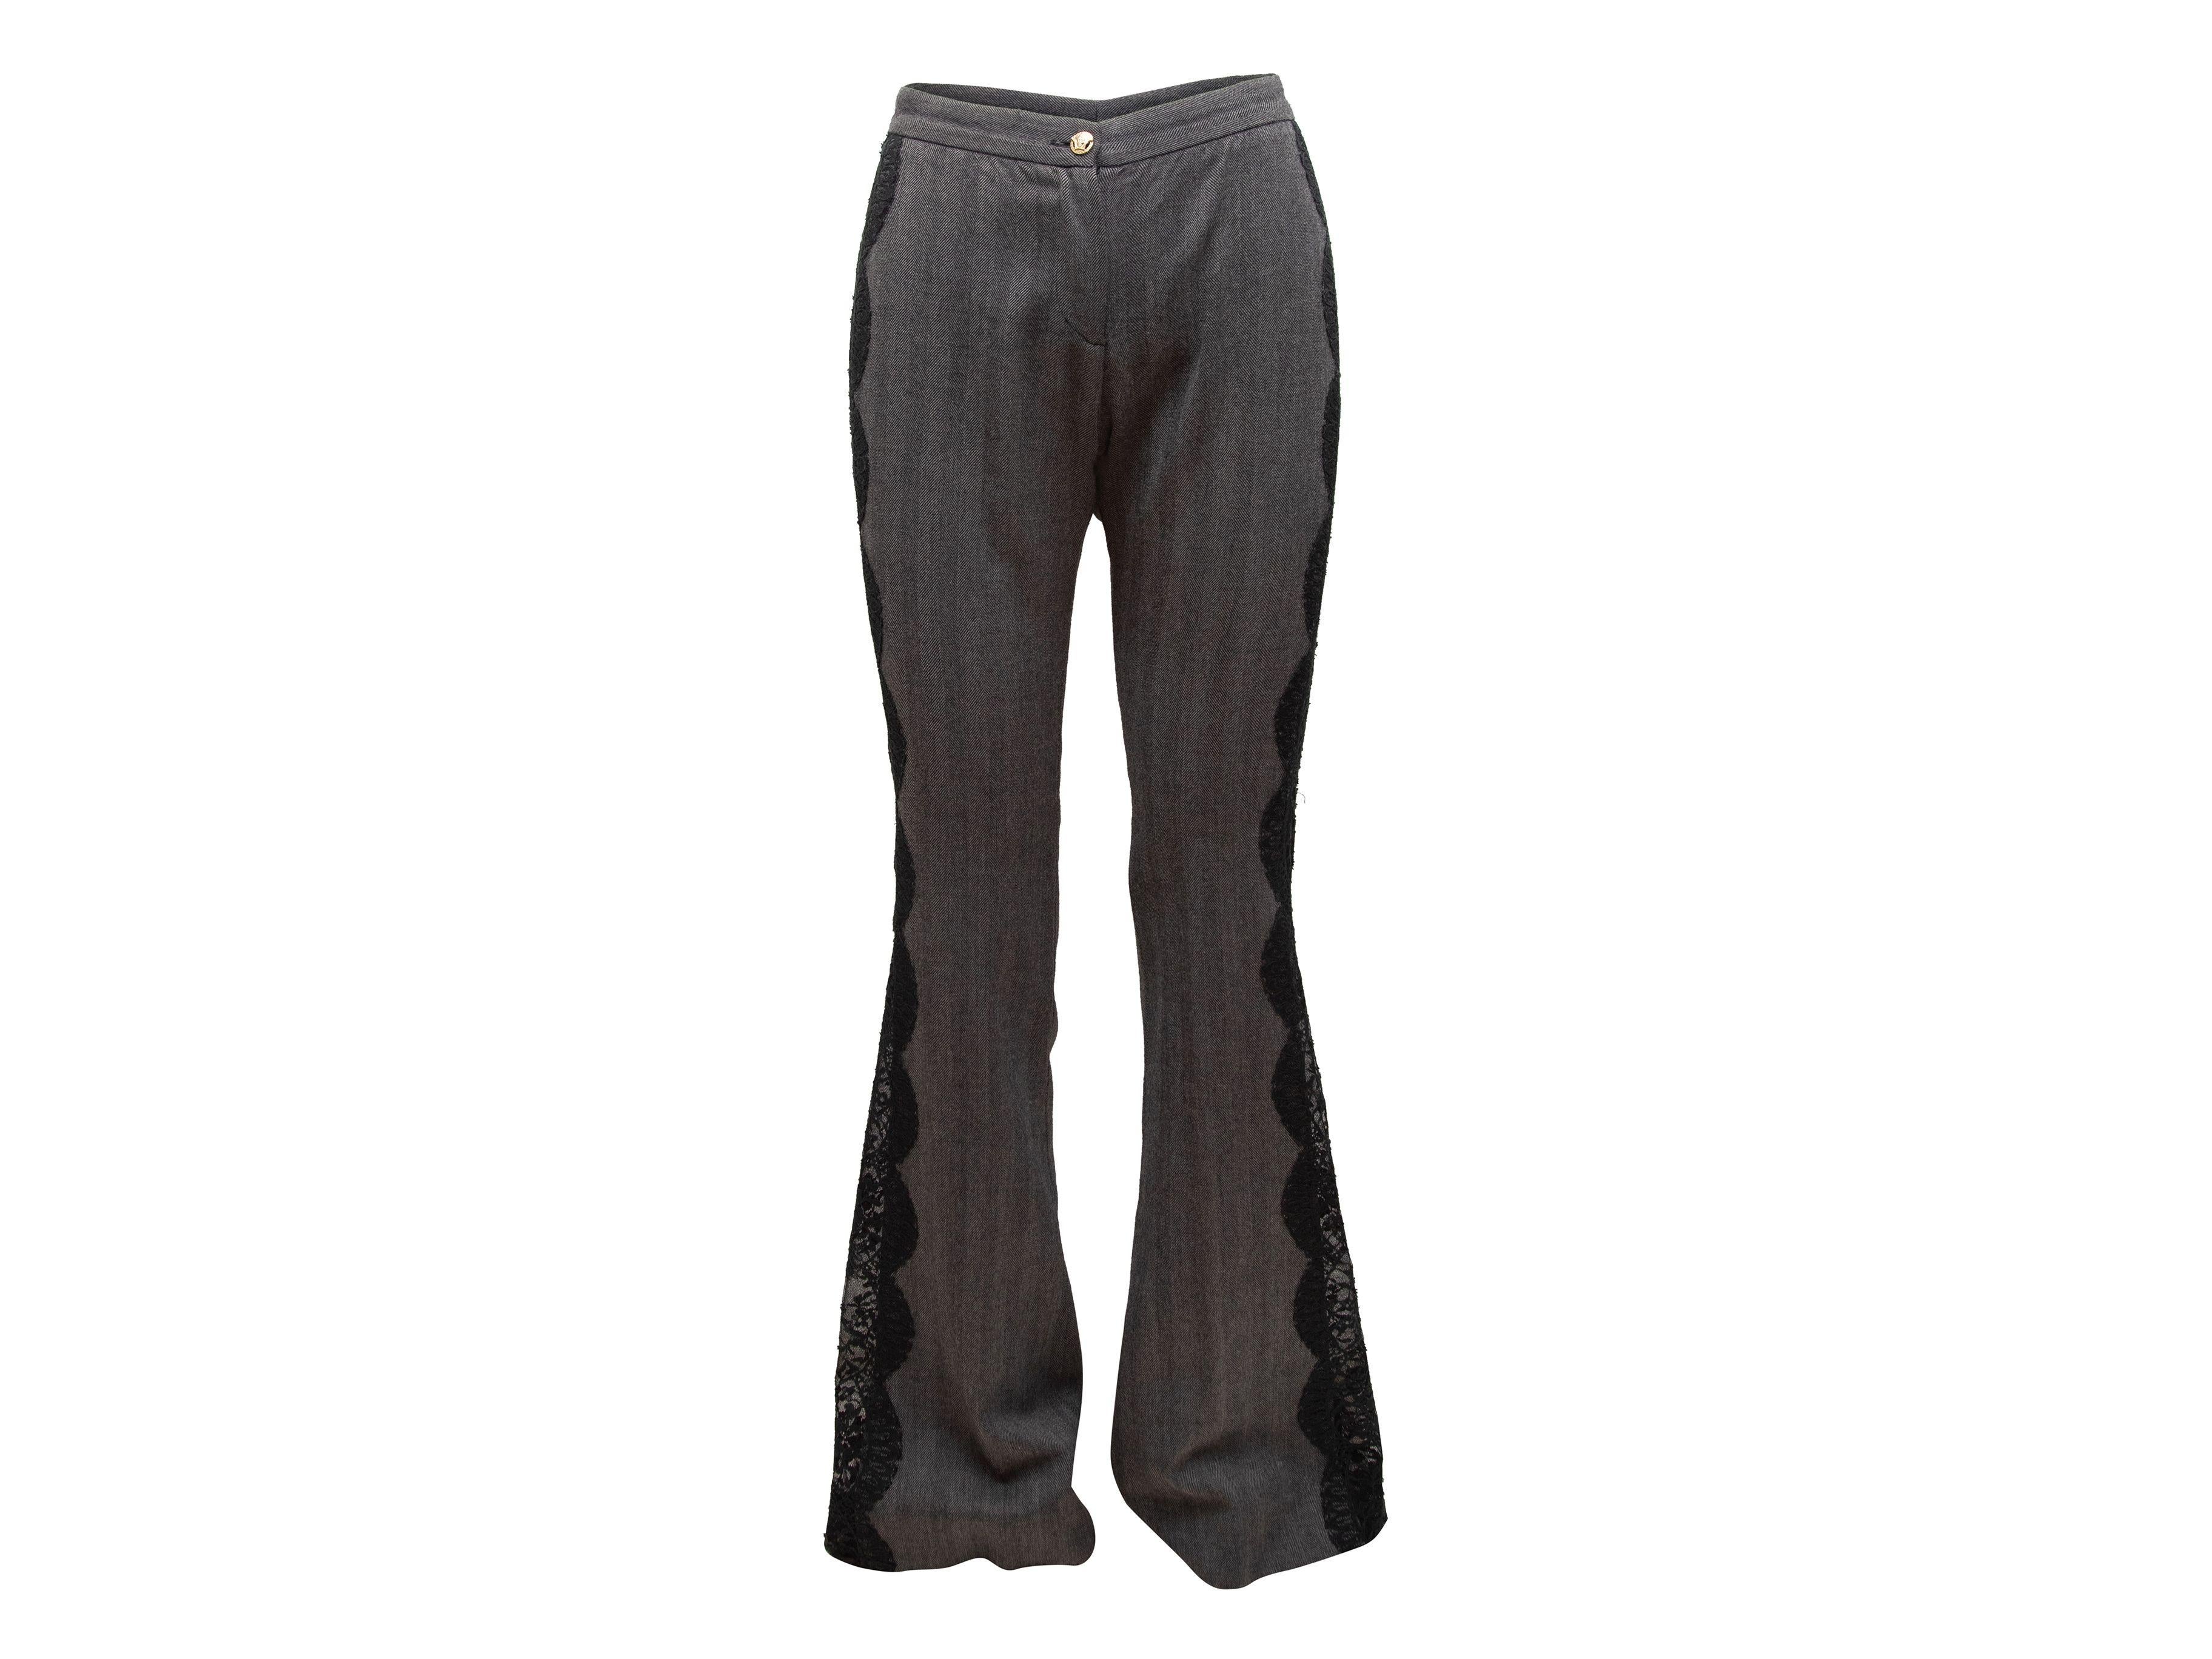 Versace Grey & Black Wool & Lace Herringbone Pants 2